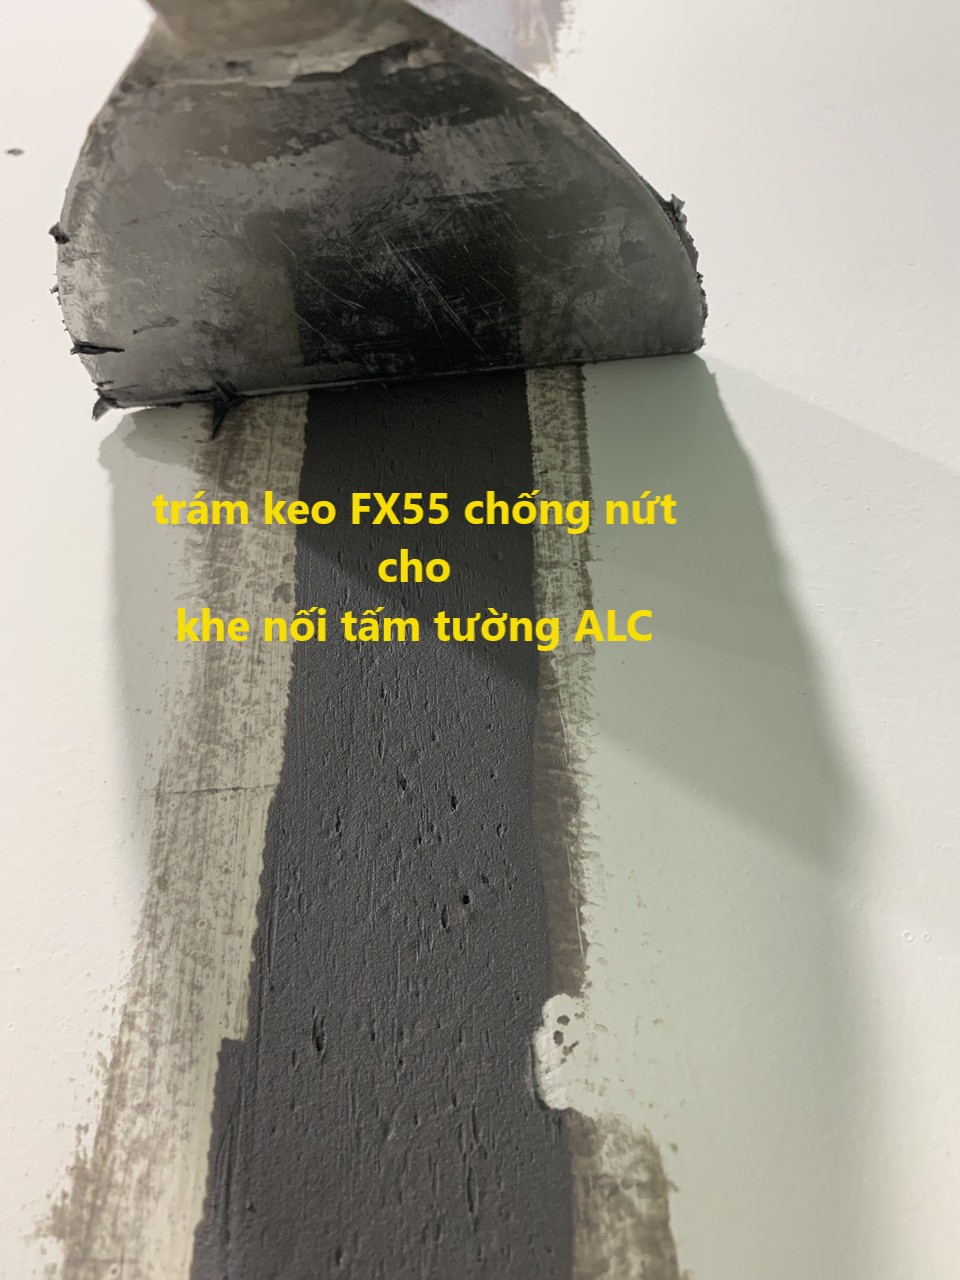 Khe nối tấm tường ALC được trám keo FX55 chống nứt